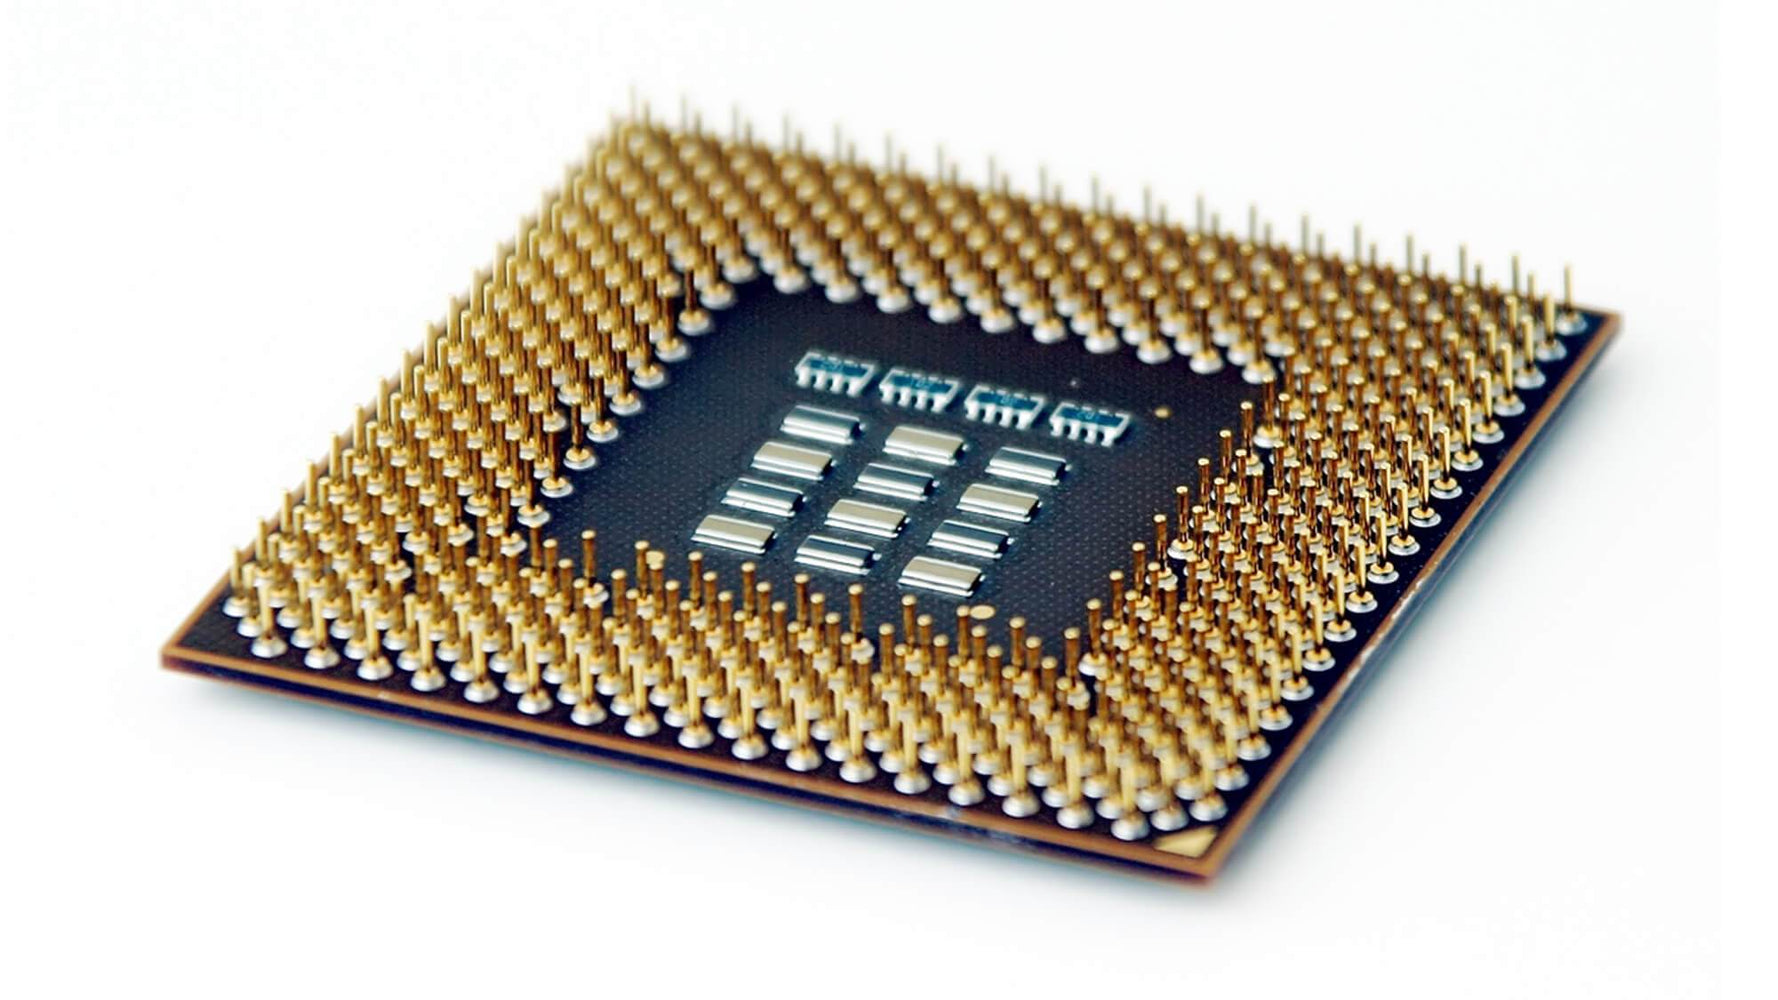 BX80623G645-A1 - Intel Pentium G645 2-Core 2.90GHz 5GT/s DMI 3MB SmartCache Socket LGA1155 Processor